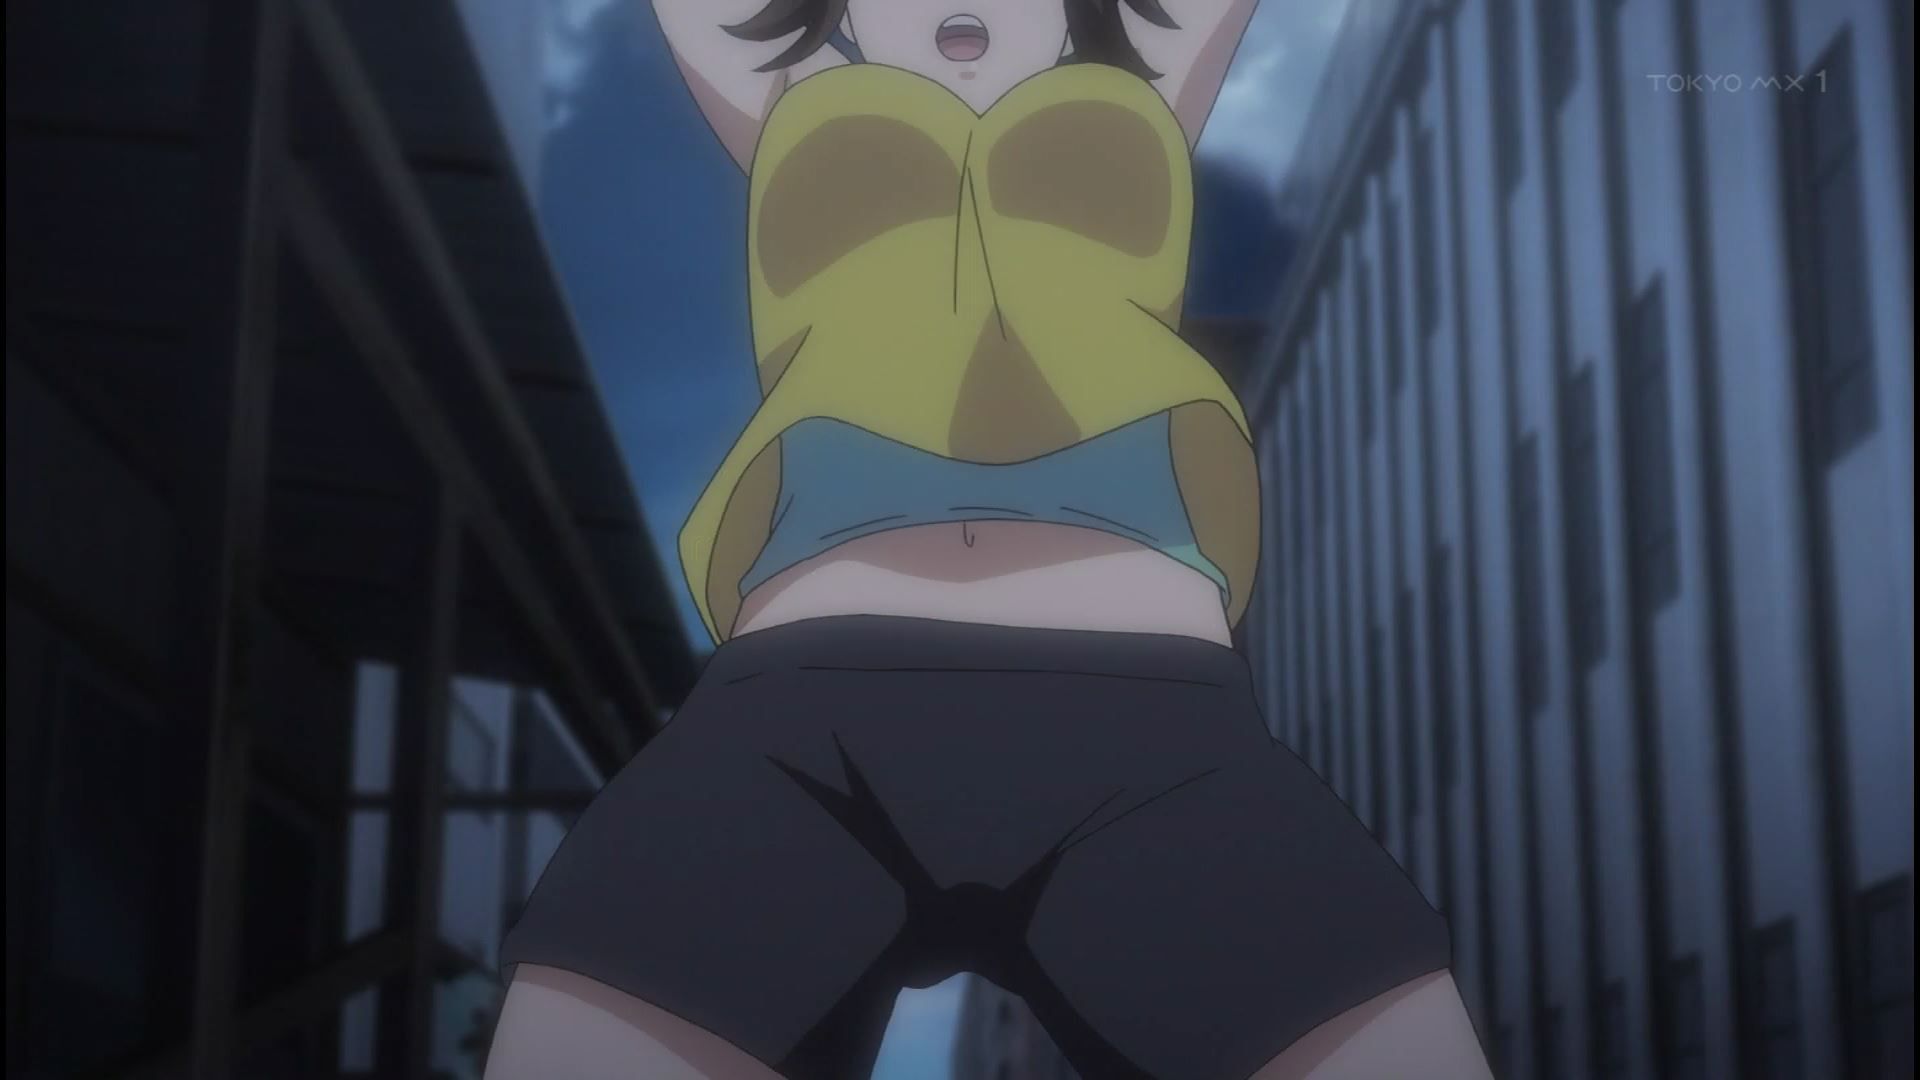 Anime [Kandagawa JETGIRLS] 3 episodes, such as girls erotic and public bathing scene! 3